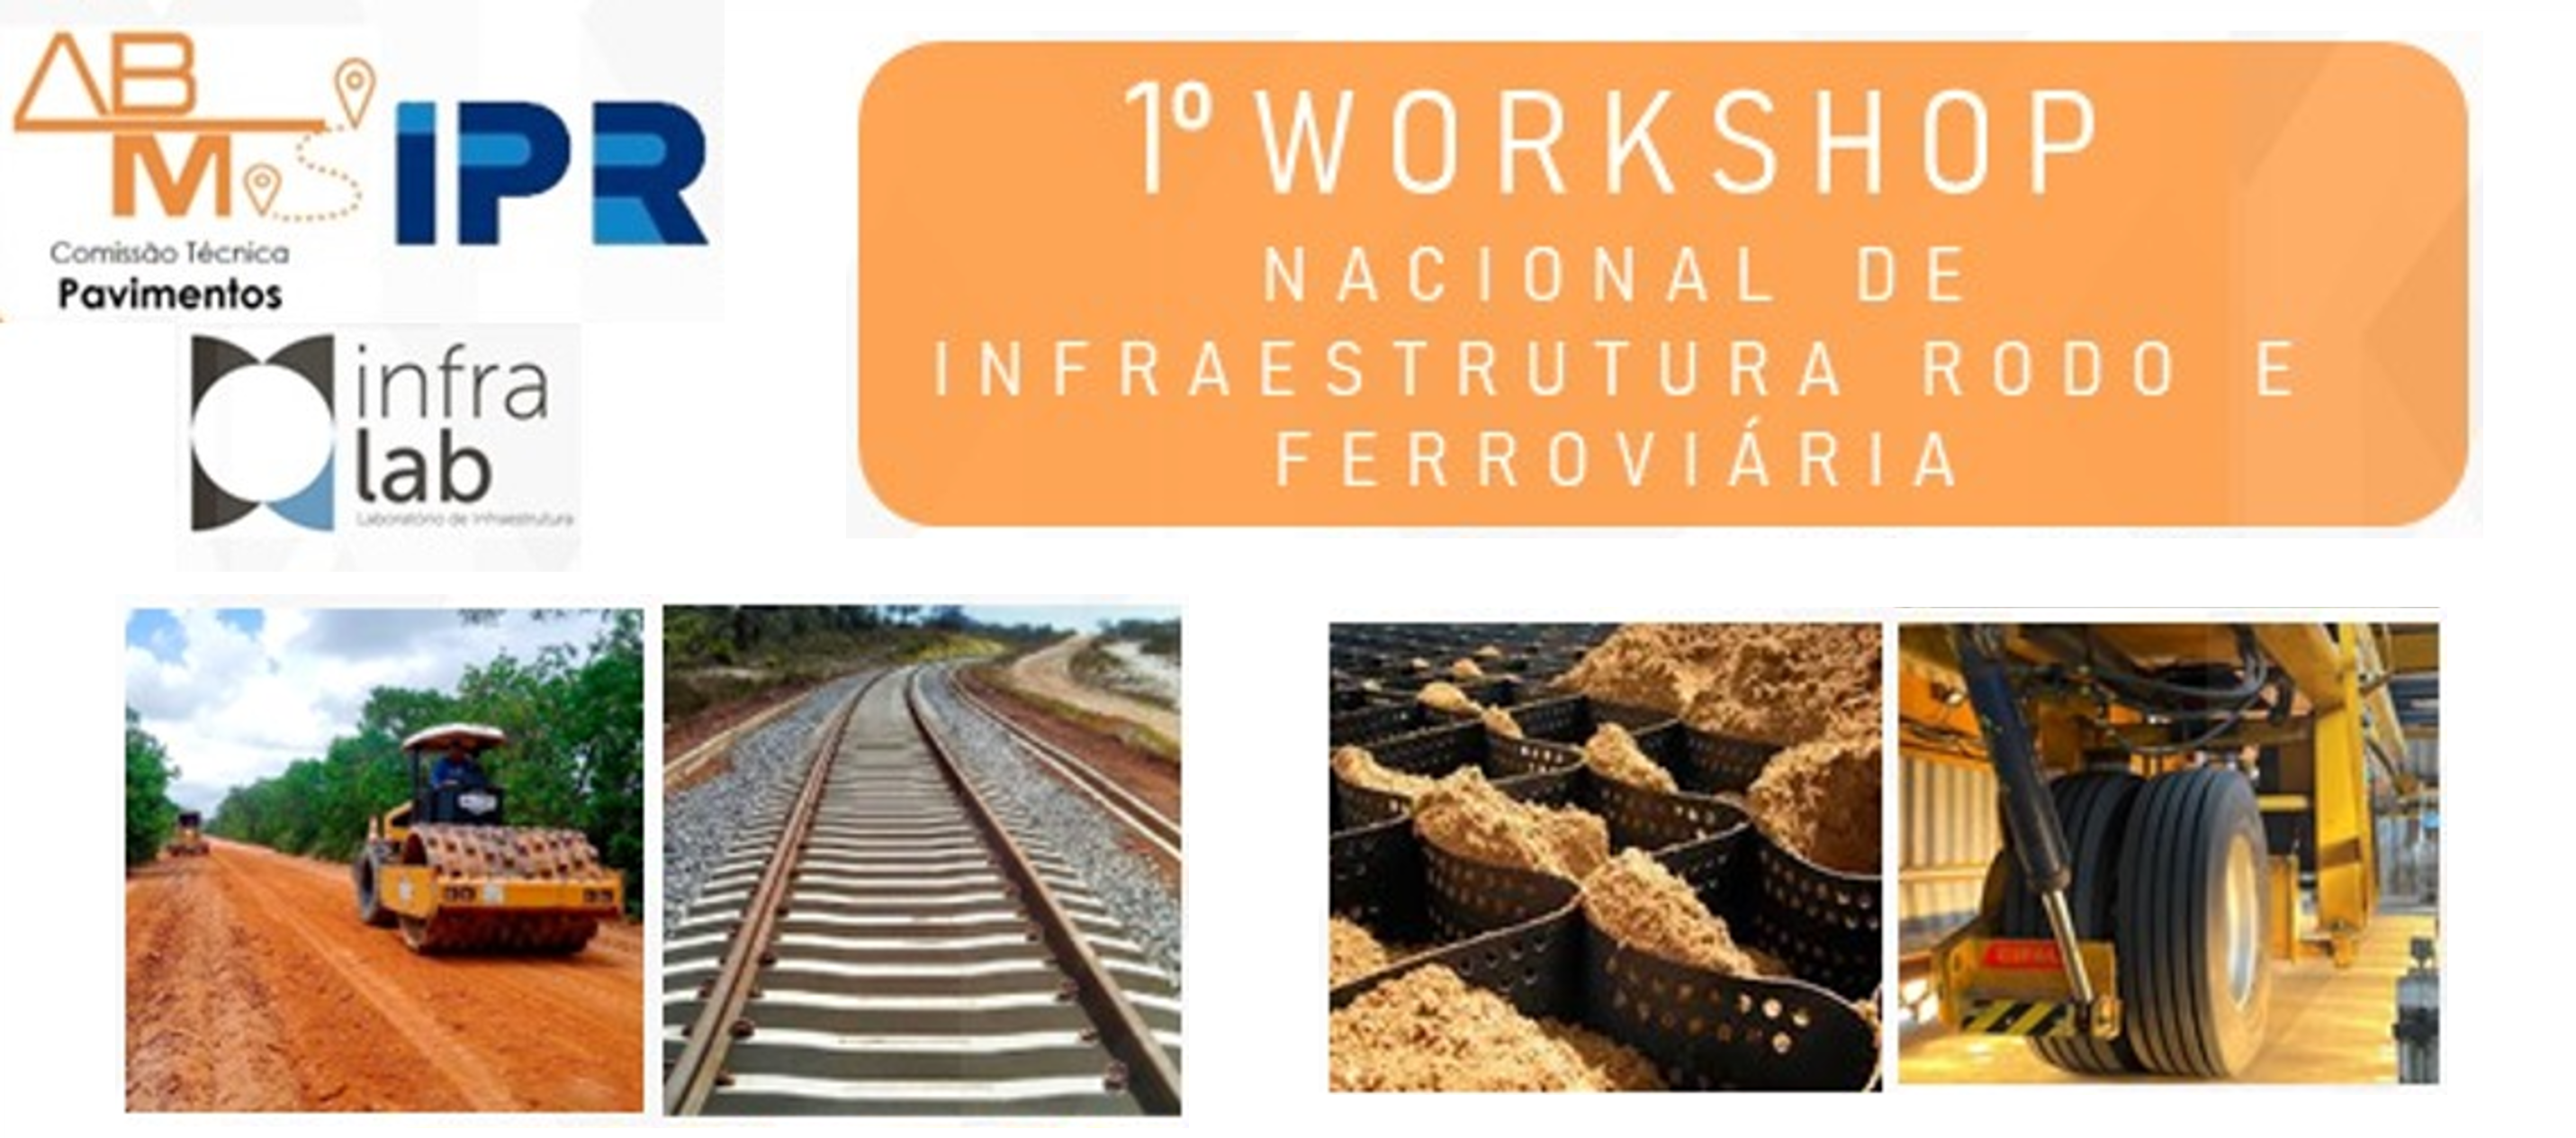 1° Workshop Nacional de Infraestrutura Rodo e Ferroviária